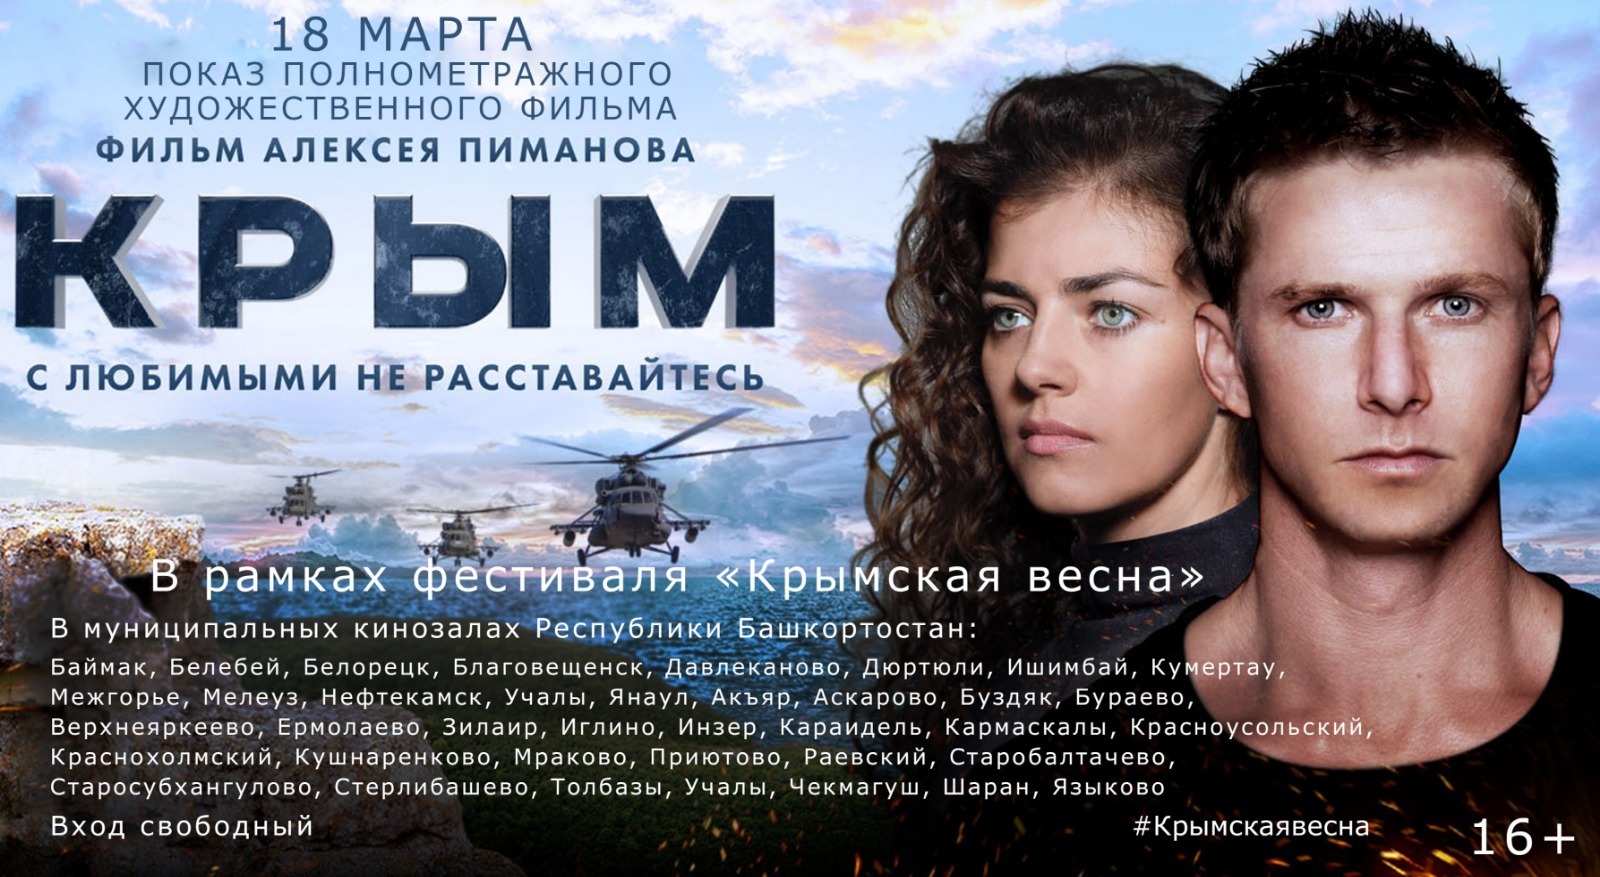 В Башкирии откроется фестиваль «Крымская весна»